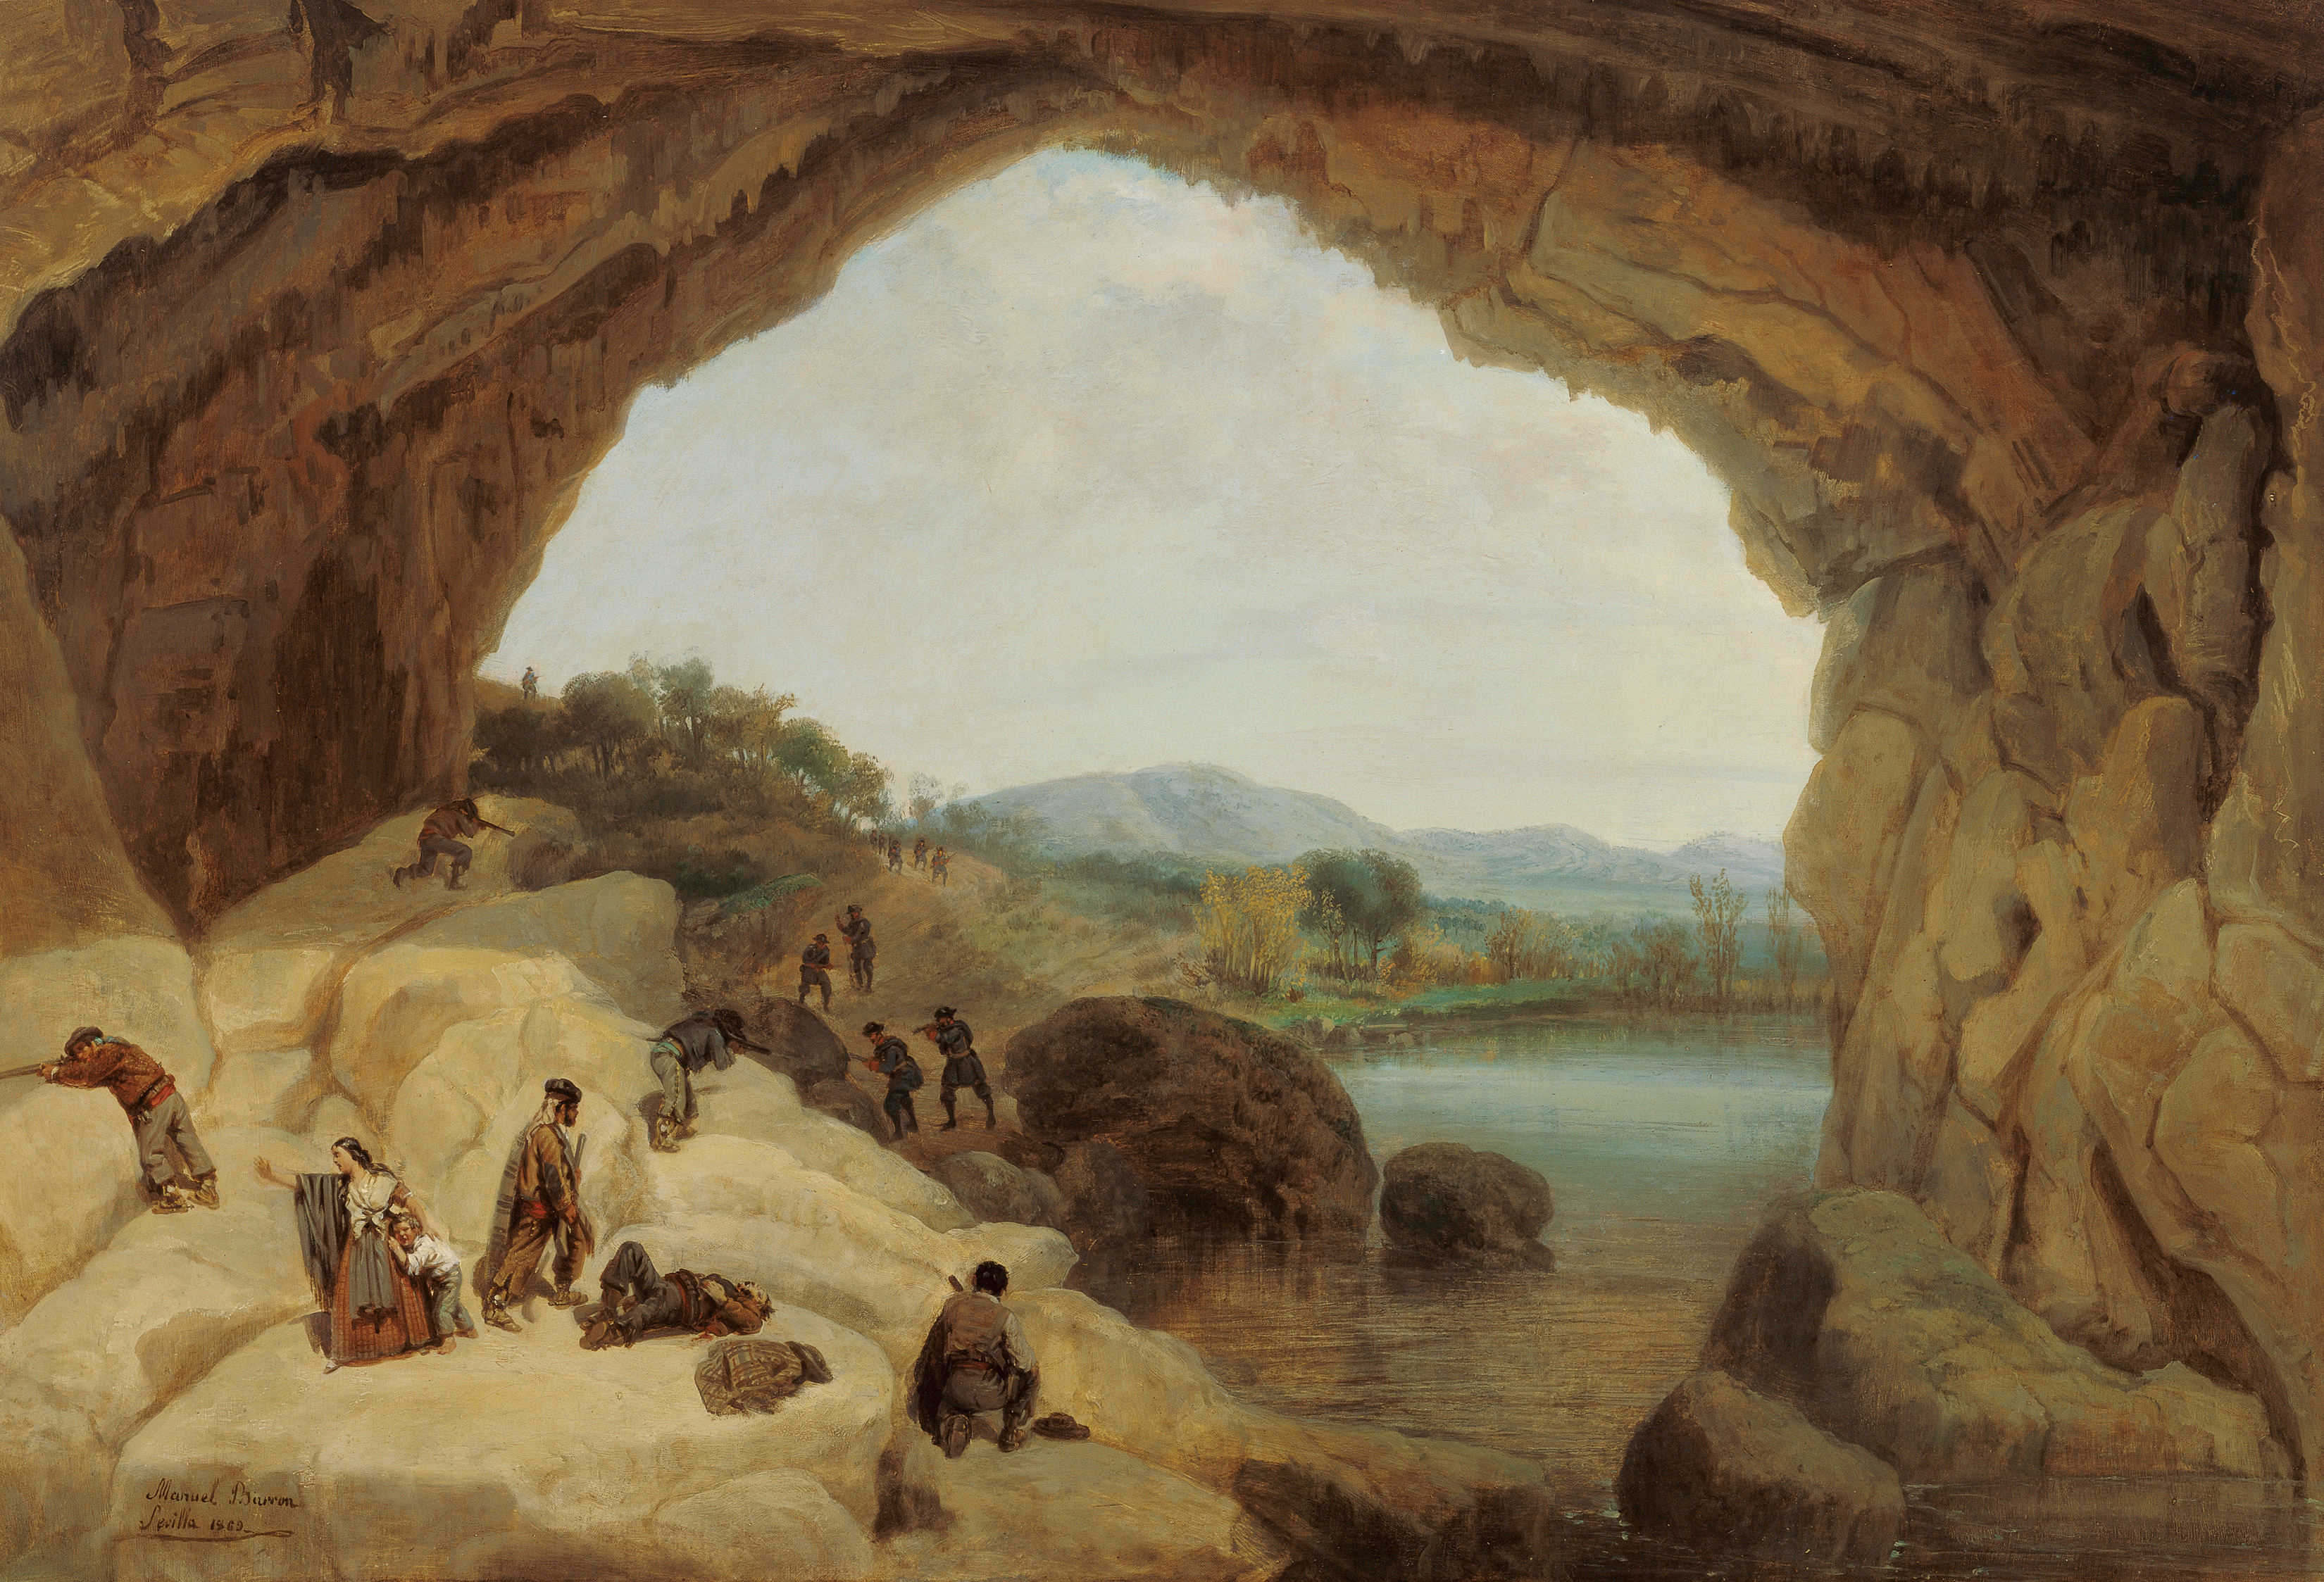 Ambushing a Group of Bandits at the Cueva del Gato